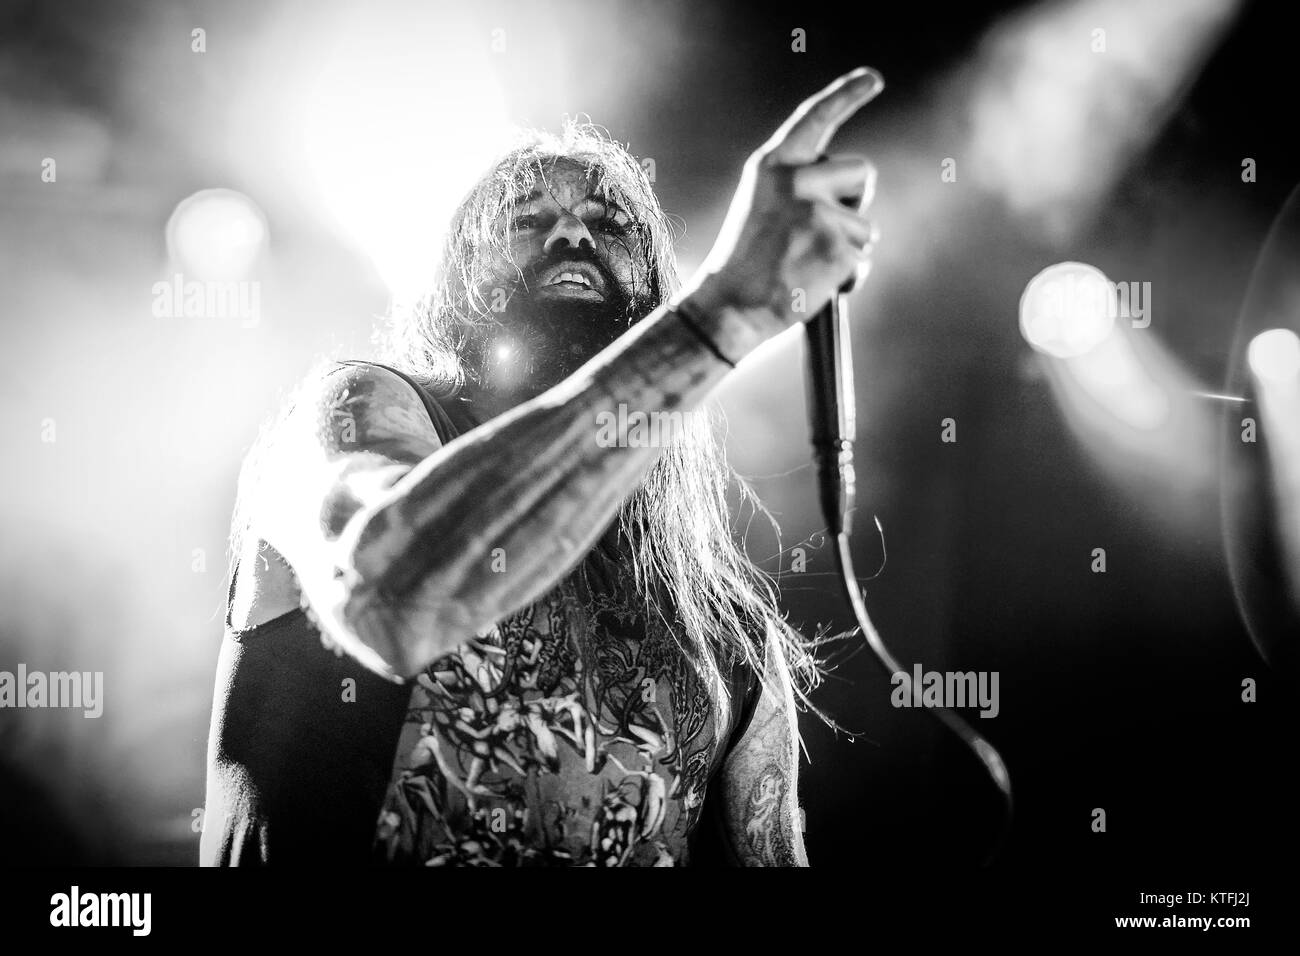 Die amerikanischen Death Metal Band Suffocation führt ein Live Konzert am Rockefeller als Teil des Festivals Inferno Metal Festival 2016 in Oslo. Hier Sänger Ricky Myers ist live auf der Bühne gesehen. Norwegen, 25/03 2016. Stockfoto